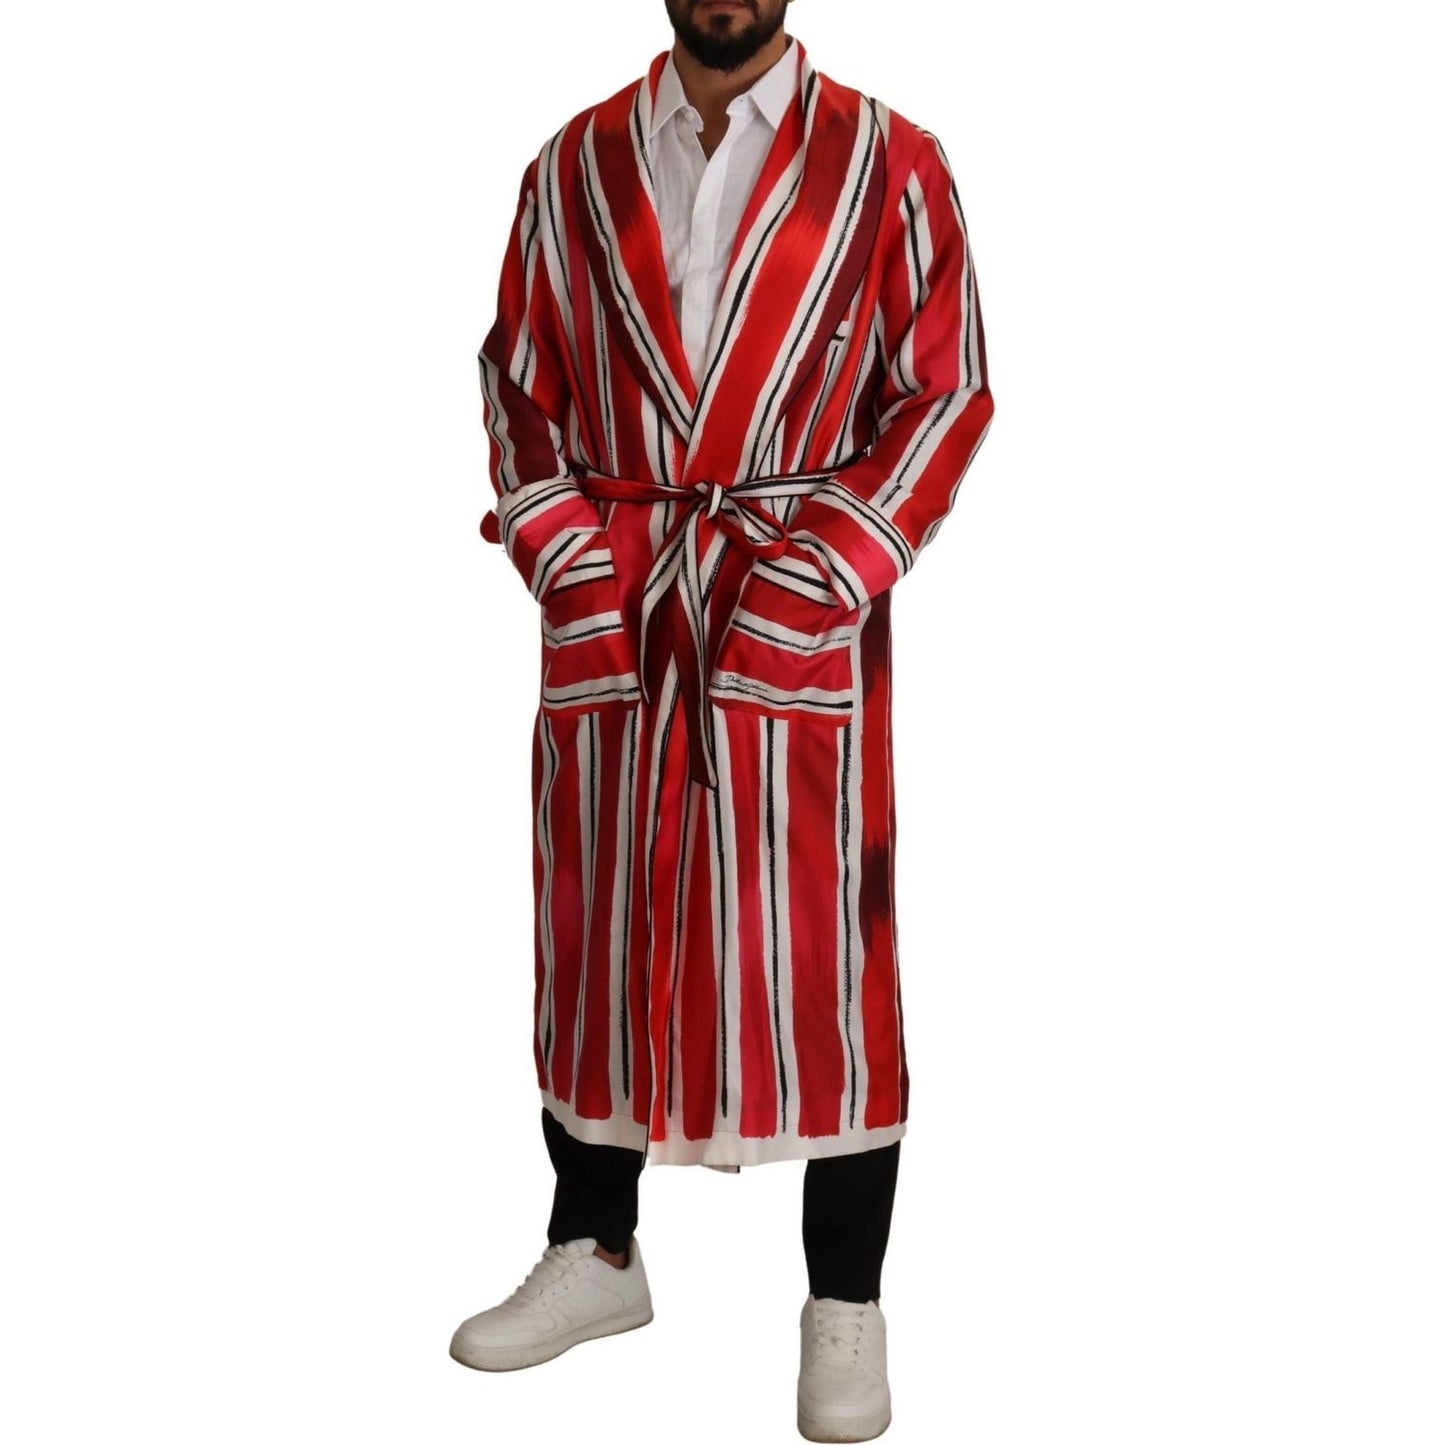 Dolce & Gabbana Chic Striped Silk Sleepwear Robe red-white-striped-silk-mens-night-gown-robe